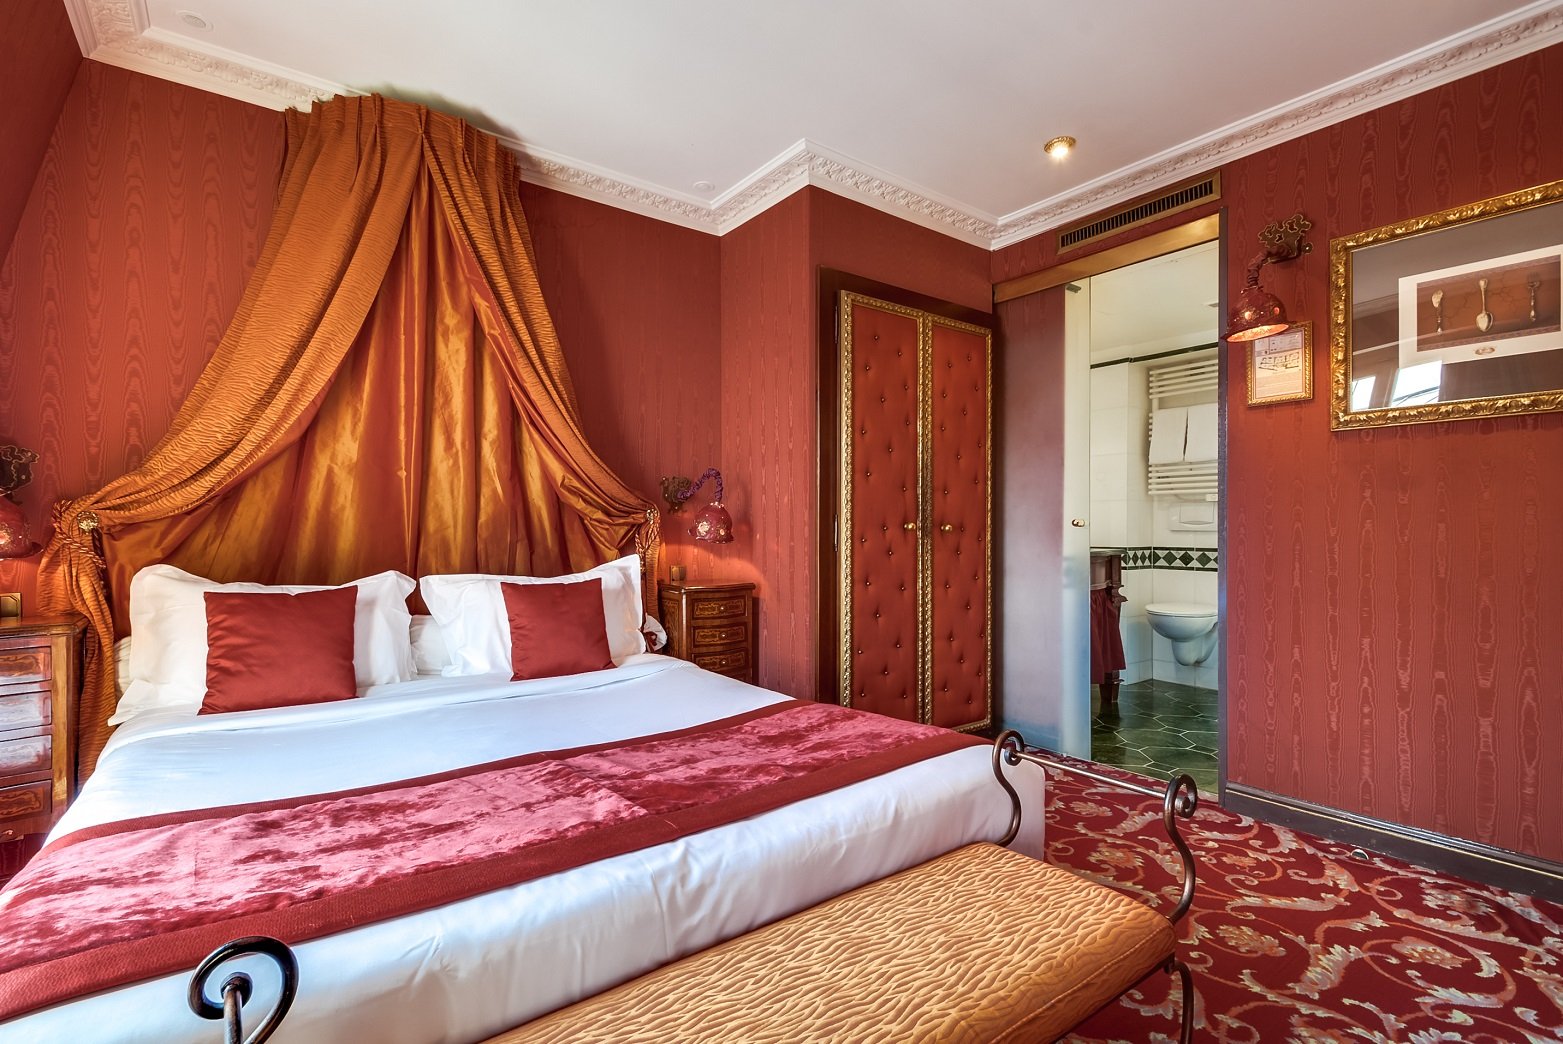 Villa Royale Pigalle Paris- Chambre Double- Hotel 4 etoiles